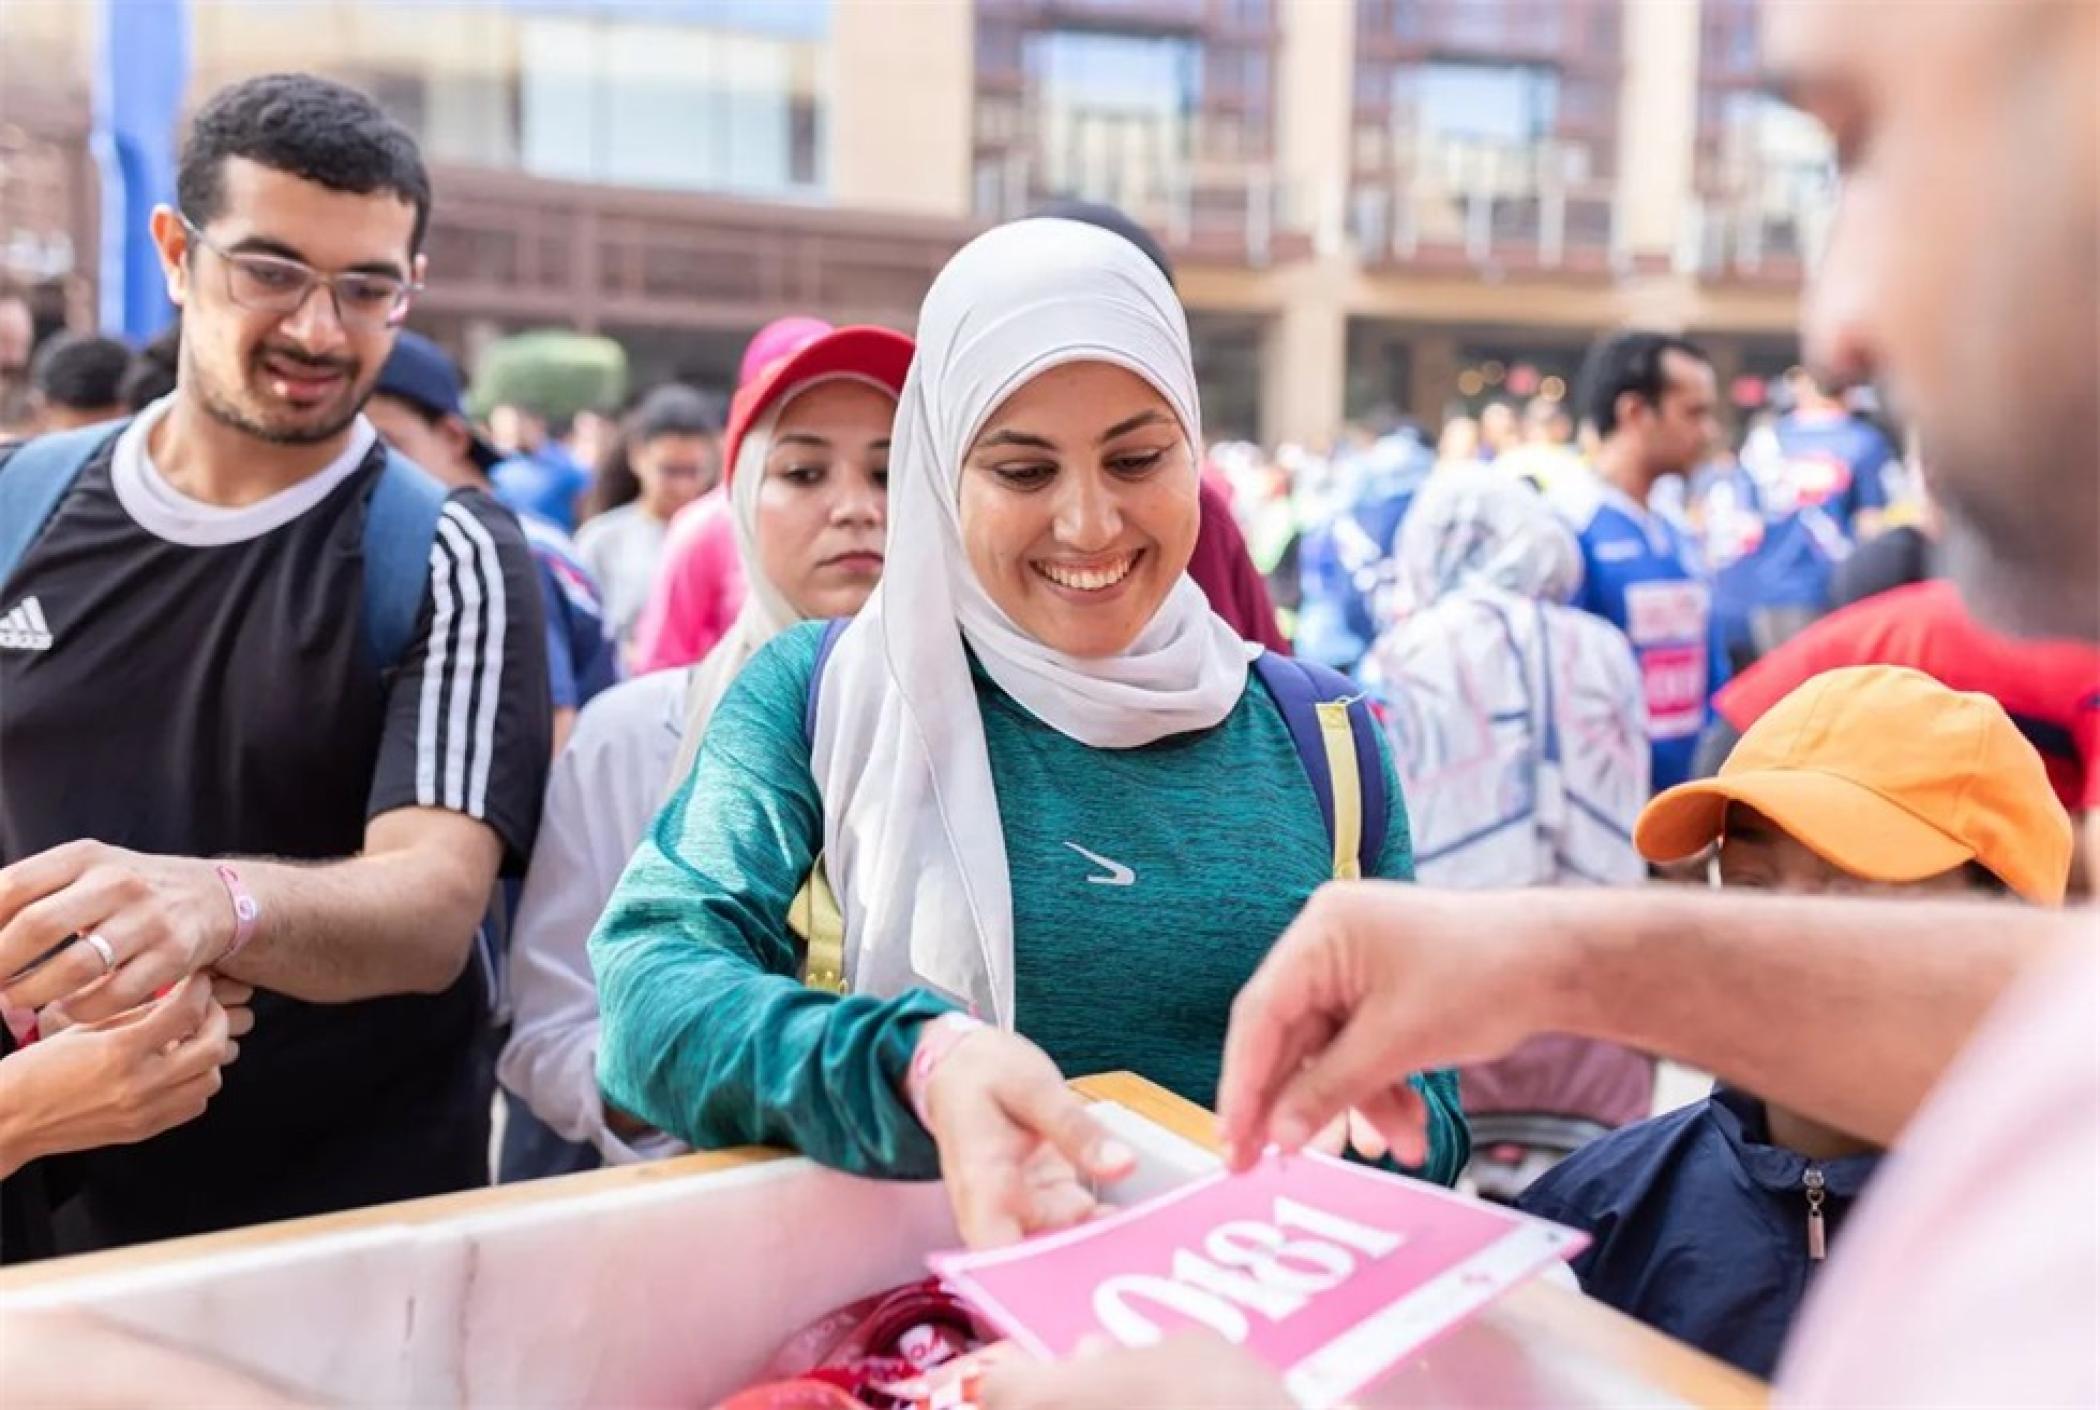 埃及购物中心“粉红跑”公益活动策划旨在赞美与乳腺癌战斗的女性力量